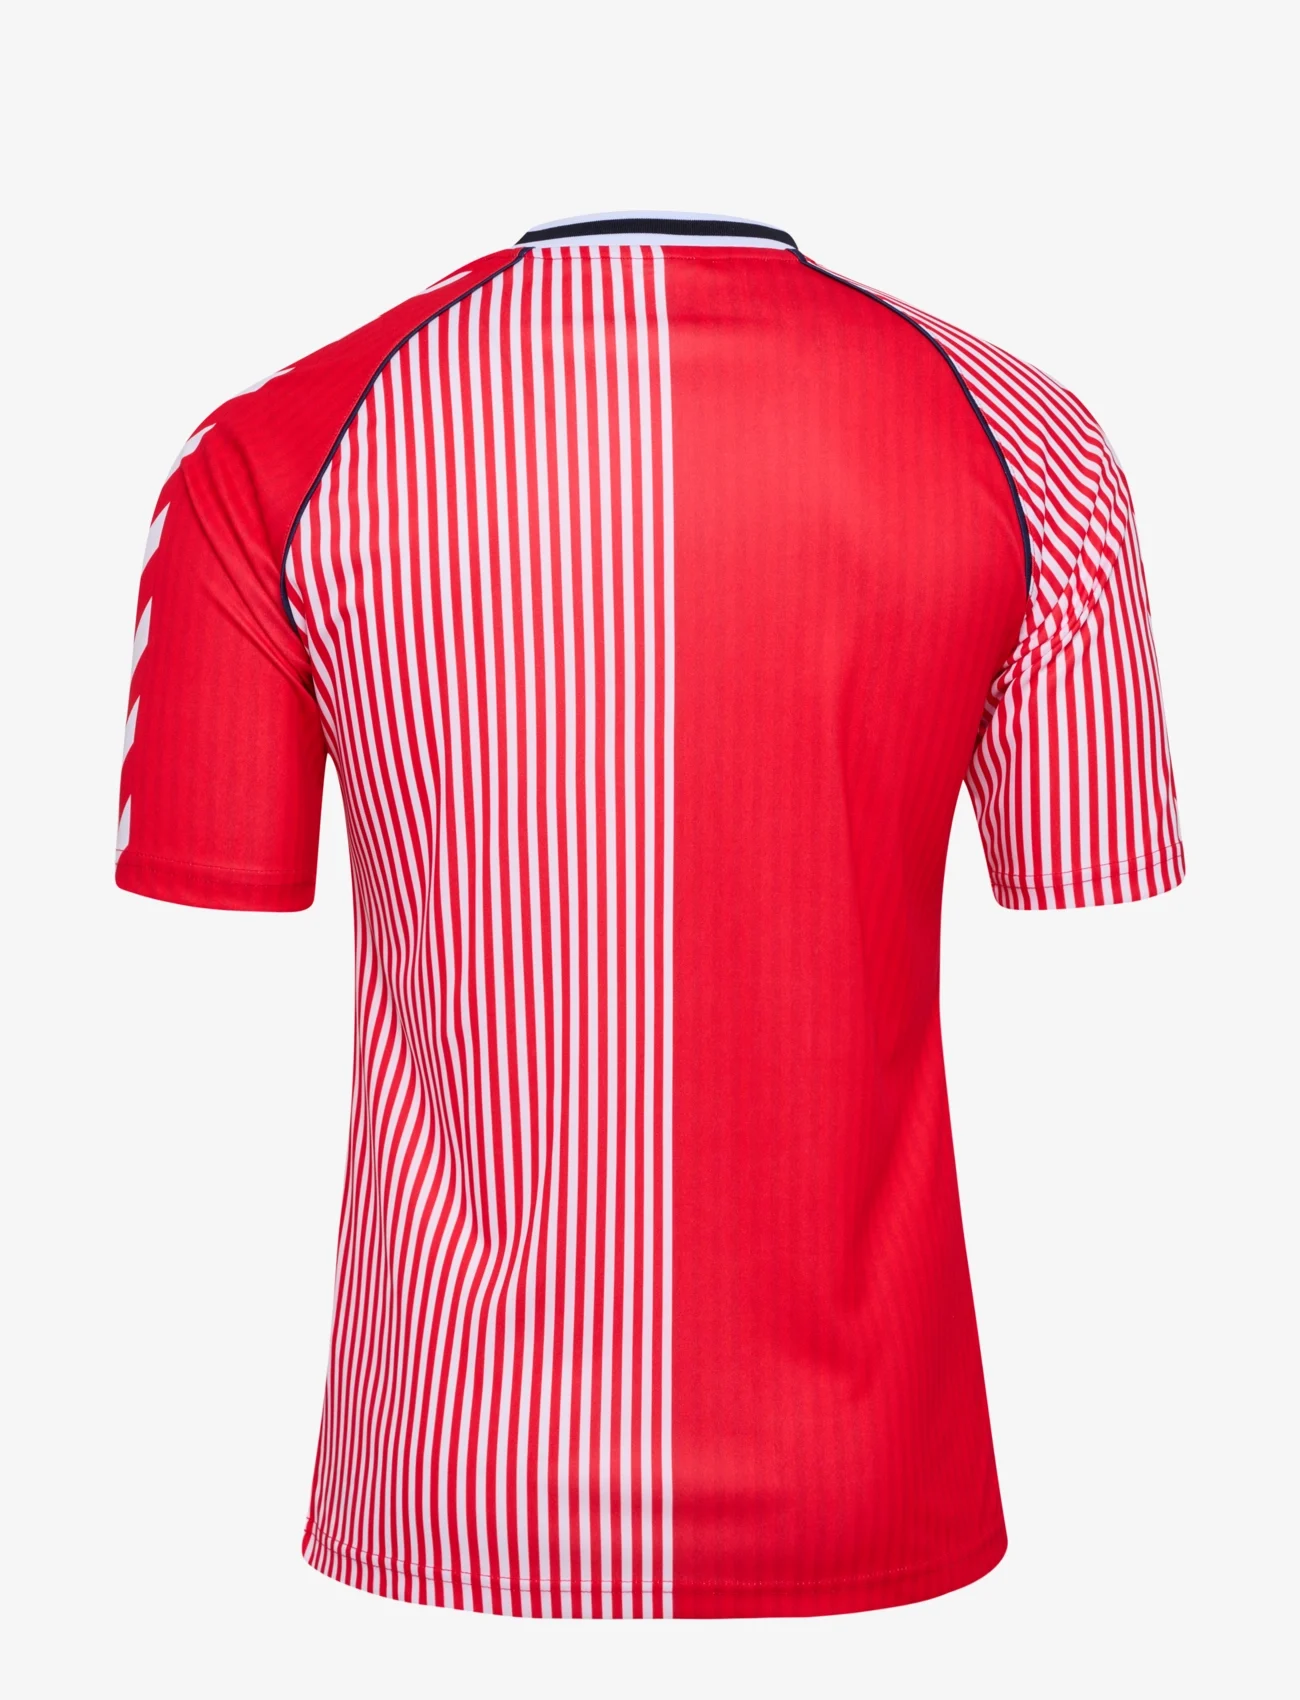 Hummel - DBU 86 REPLICA JERSEY S/S - koszulki piłkarskie - red/white - 1